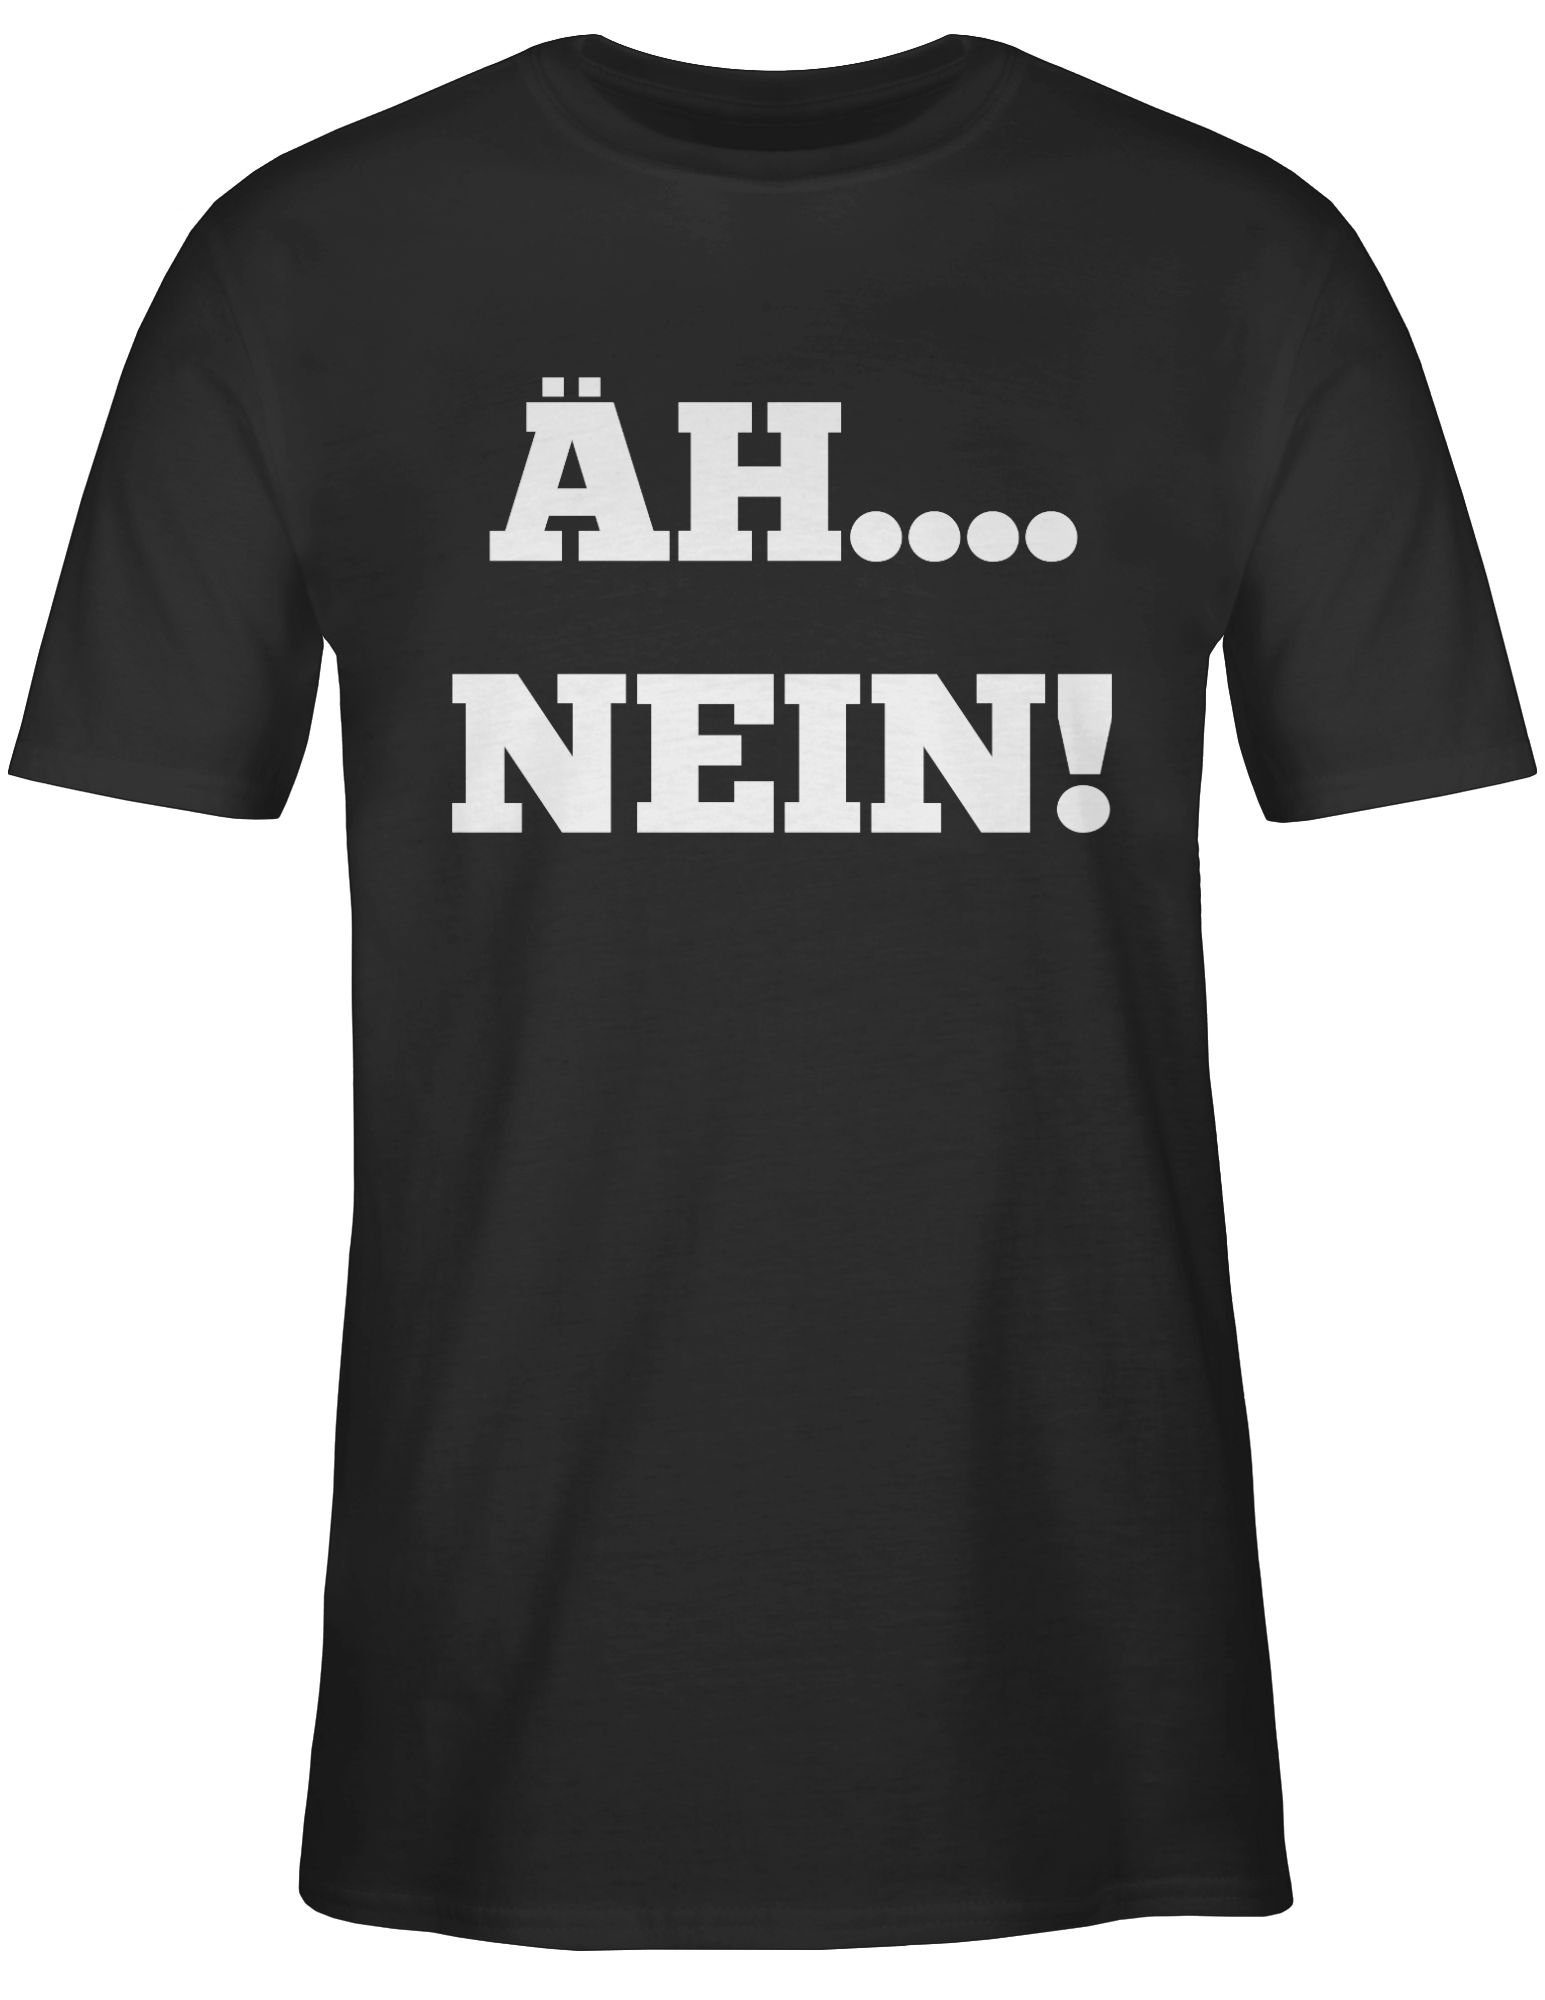 1 mit Nein! T-Shirt Äh.... Schwarz Statement Shirtracer Spruch Sprüche